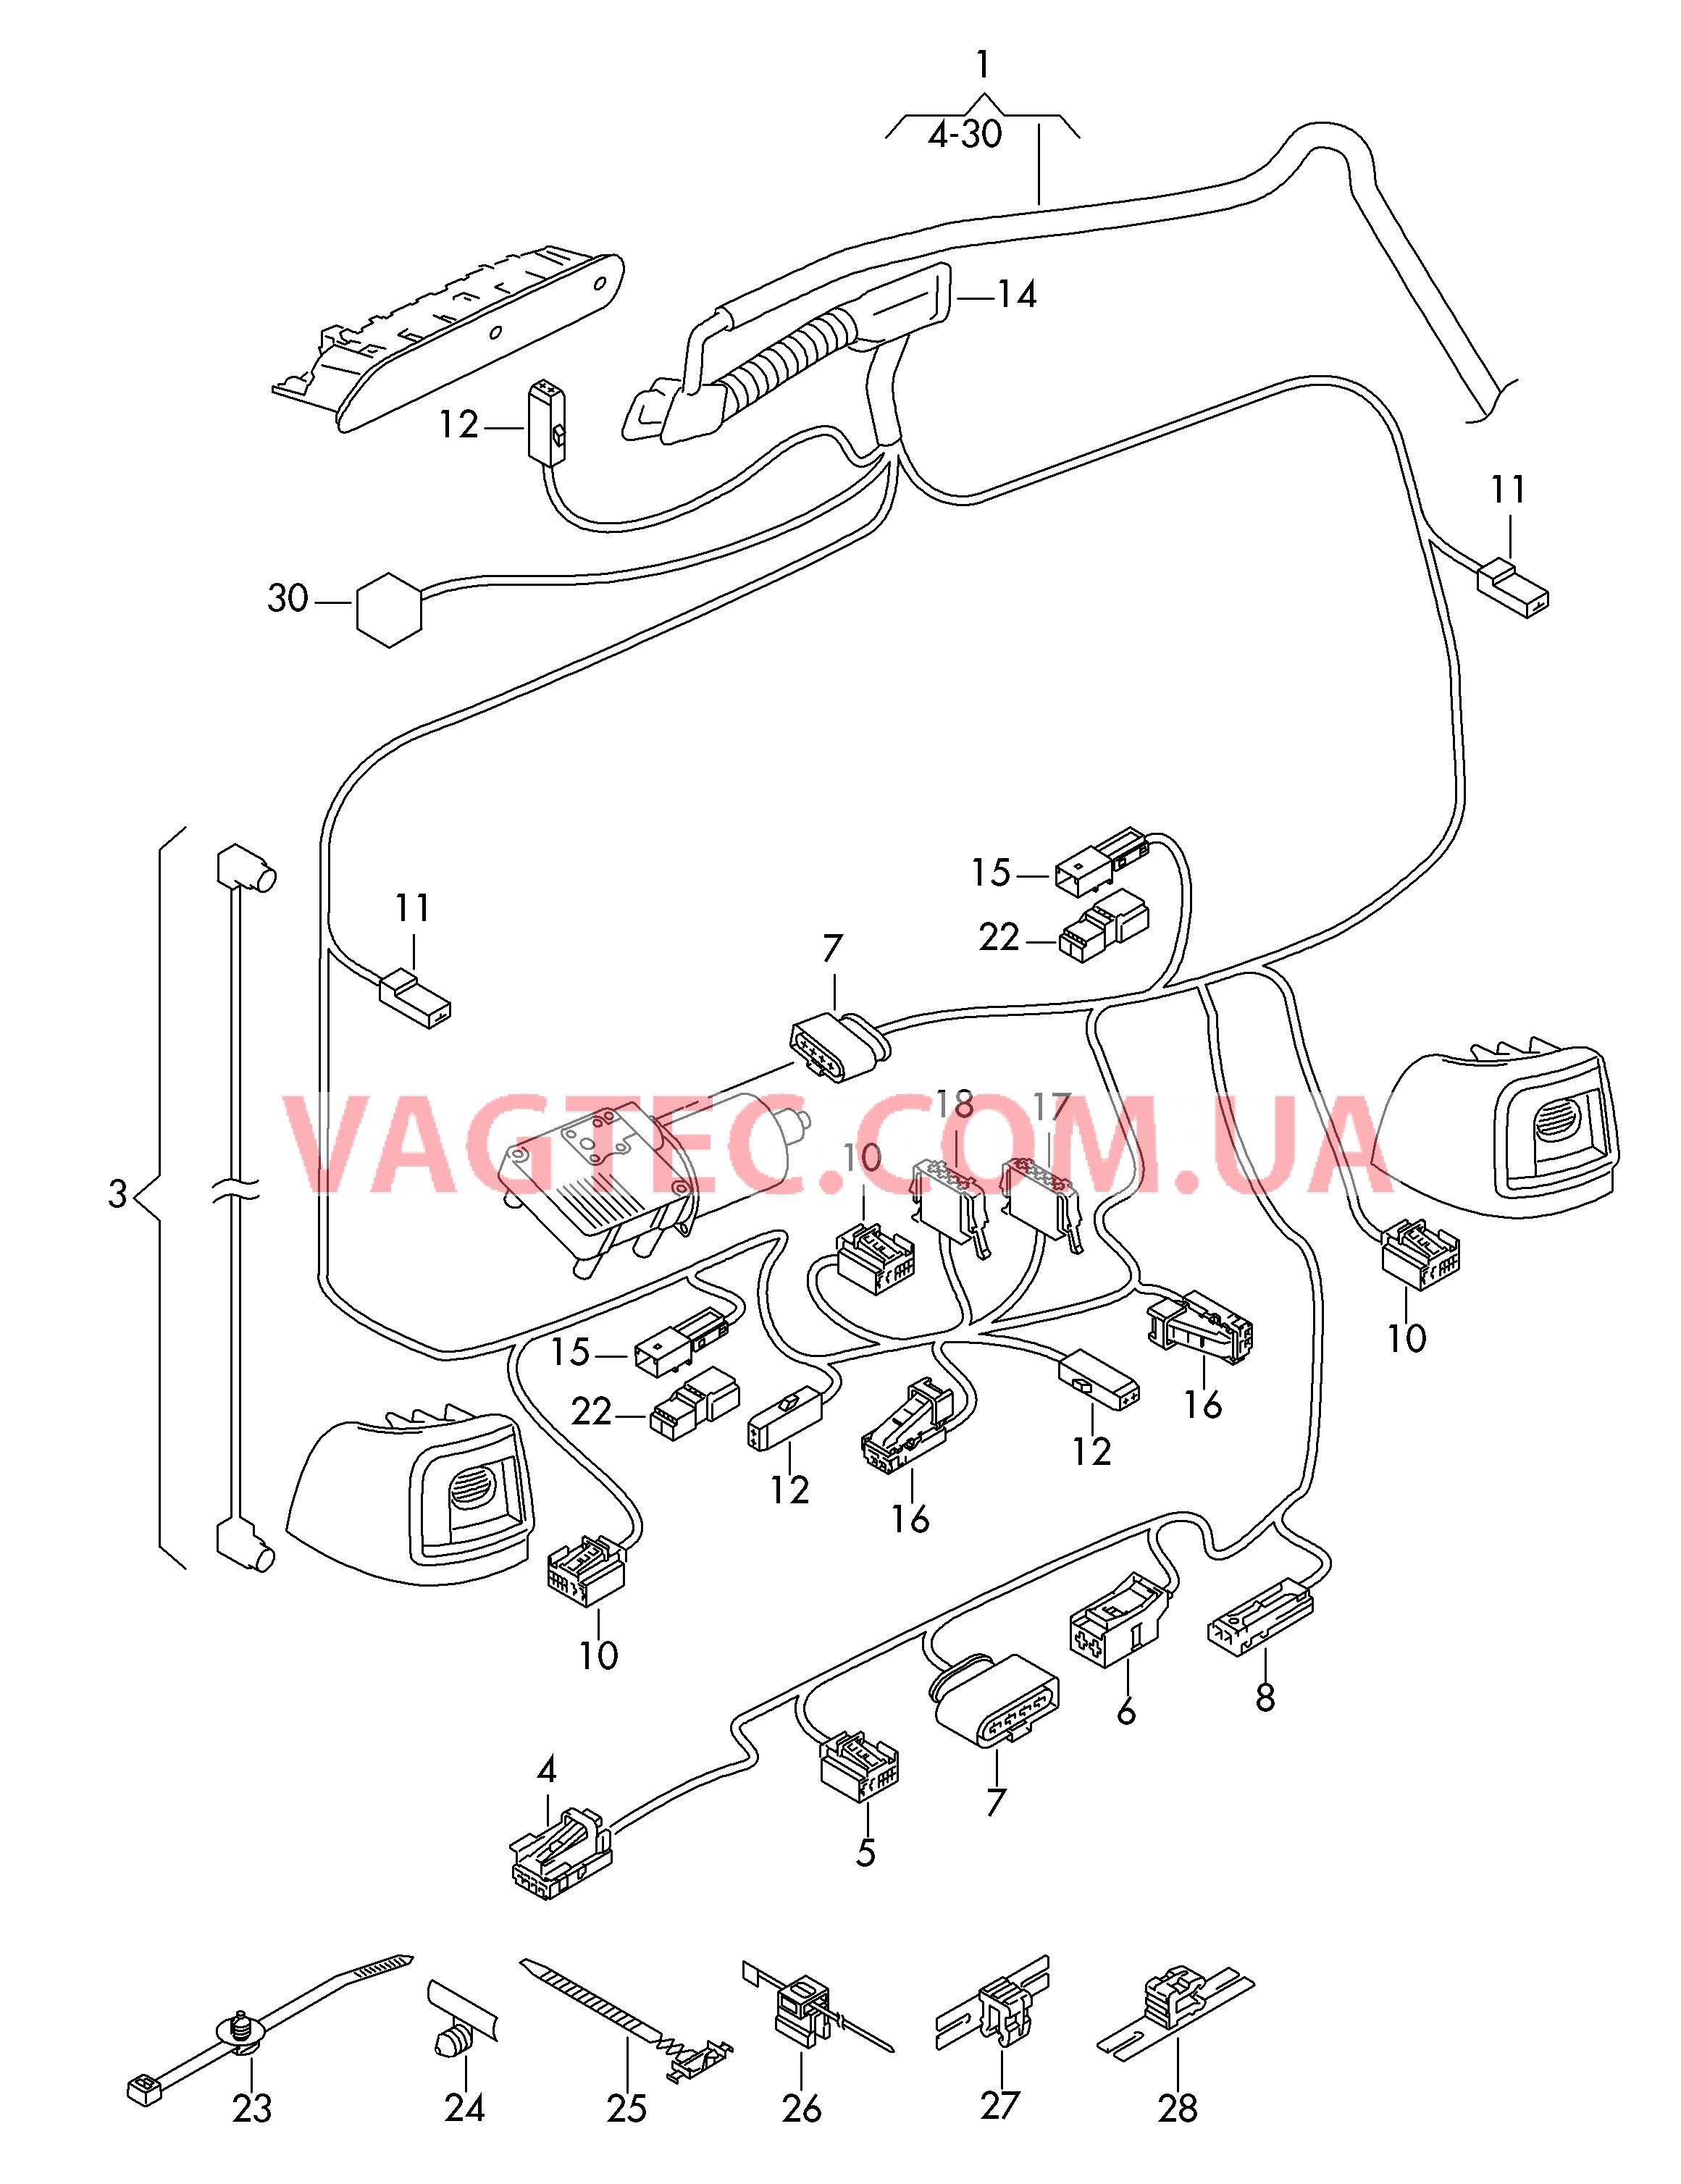 Отрезок жгута для крышки багажного отсека ***  Cм. схему электрообор.**  для SEAT Alhambra 2016